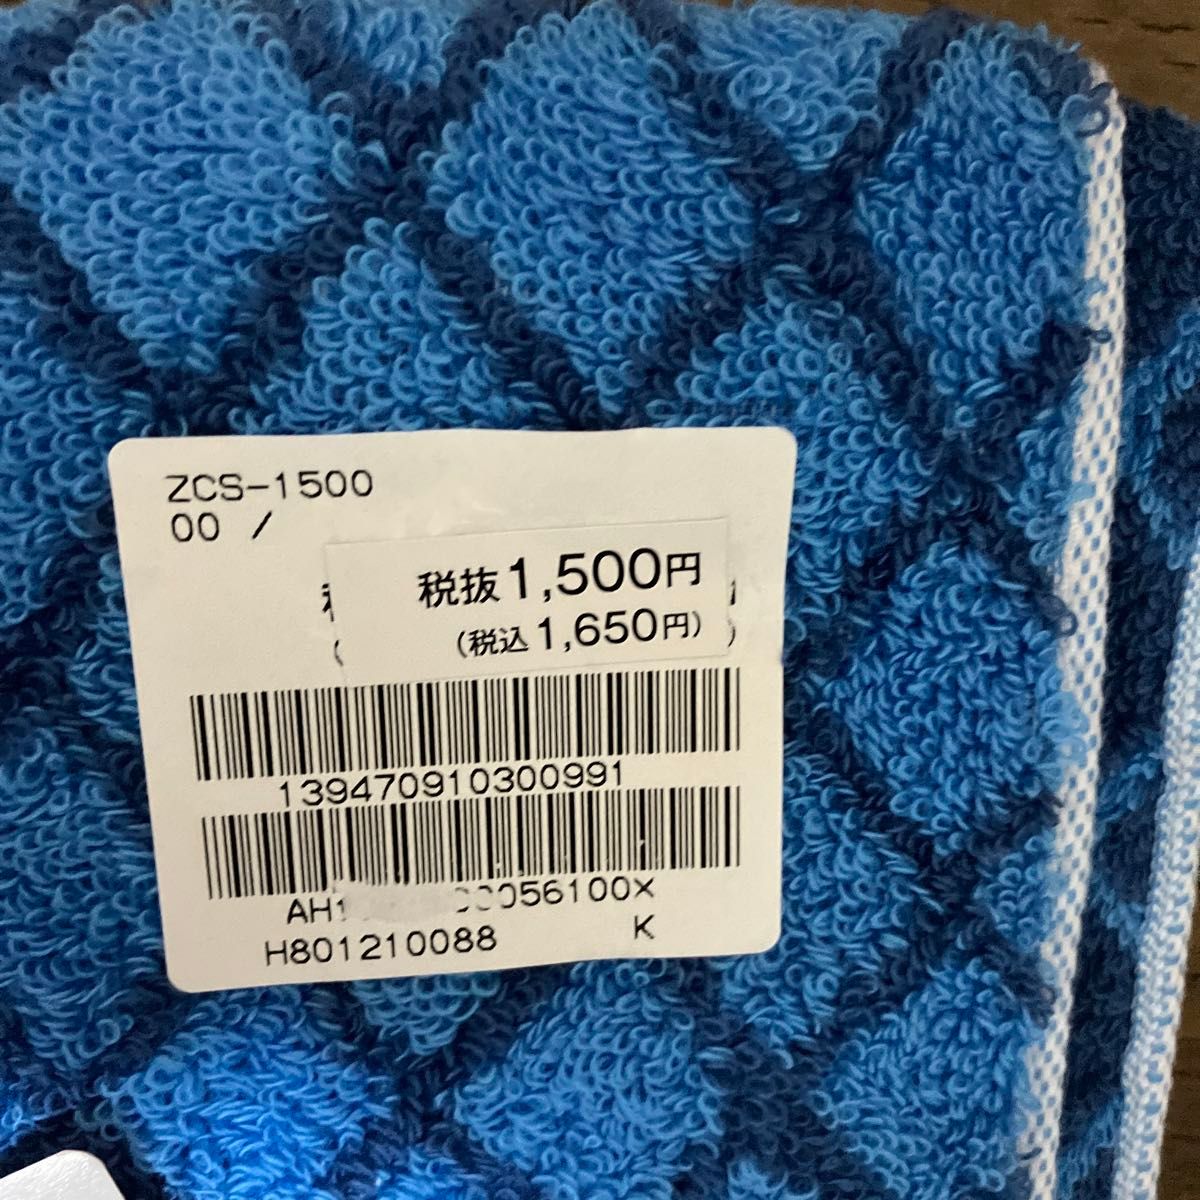 新品オロビアンコタオル35X 97未使用品タグ付き定価1500円税込み1650円